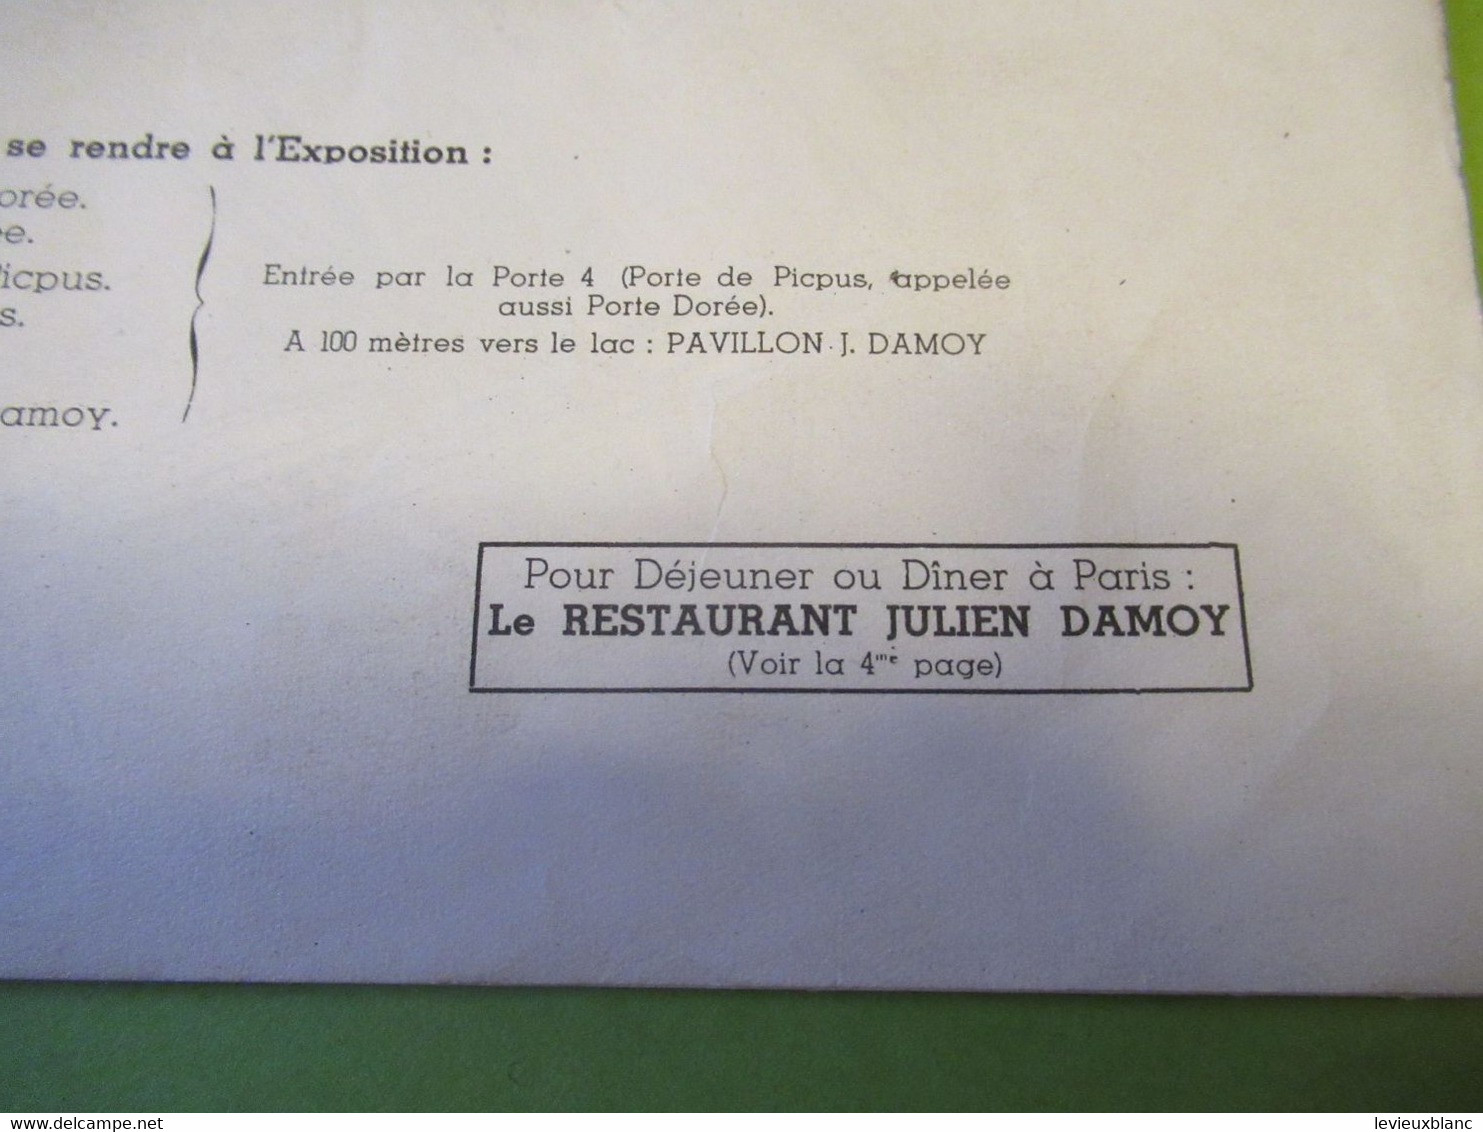 Exposition Coloniale/ Pavillon De Dégustation Des Produits JULIEN DAMOY/ Grand Plan Global De L'Exposition/1931   VPN345 - Koffie En Thee